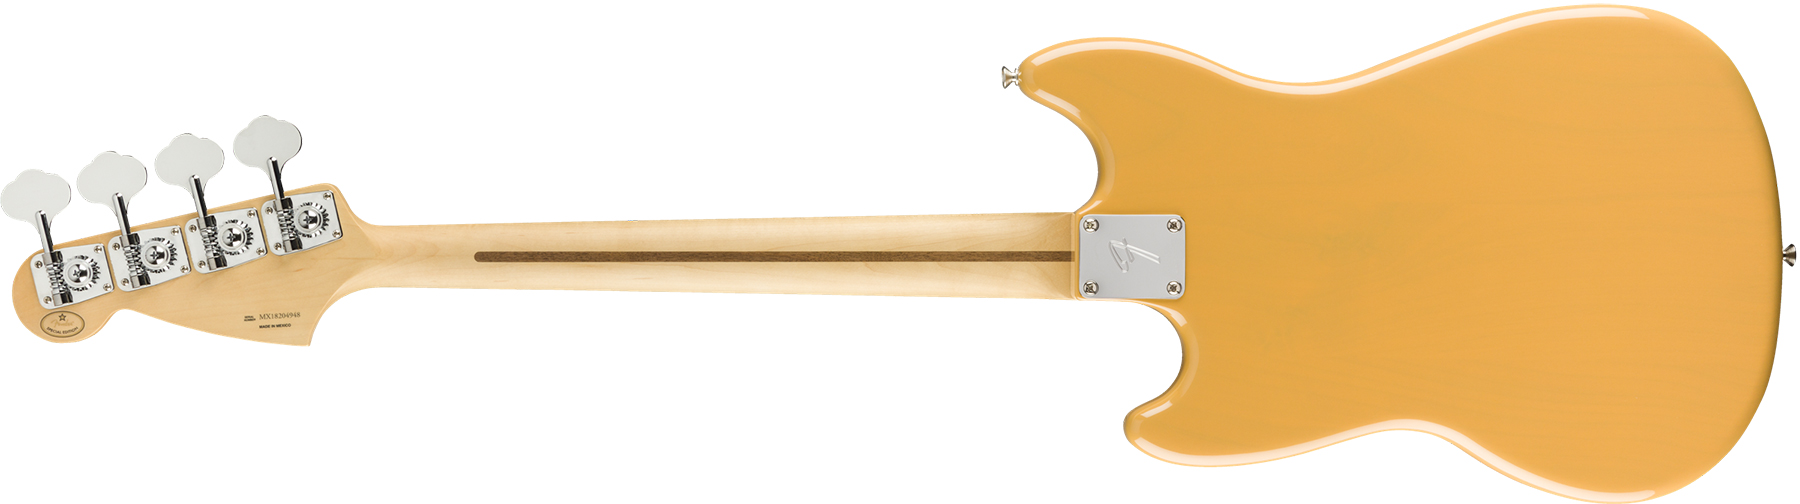 Fender Mustang Bass Pj Player Ltd Mex Mn - Butterscotch Blonde - Electric bass for kids - Variation 1